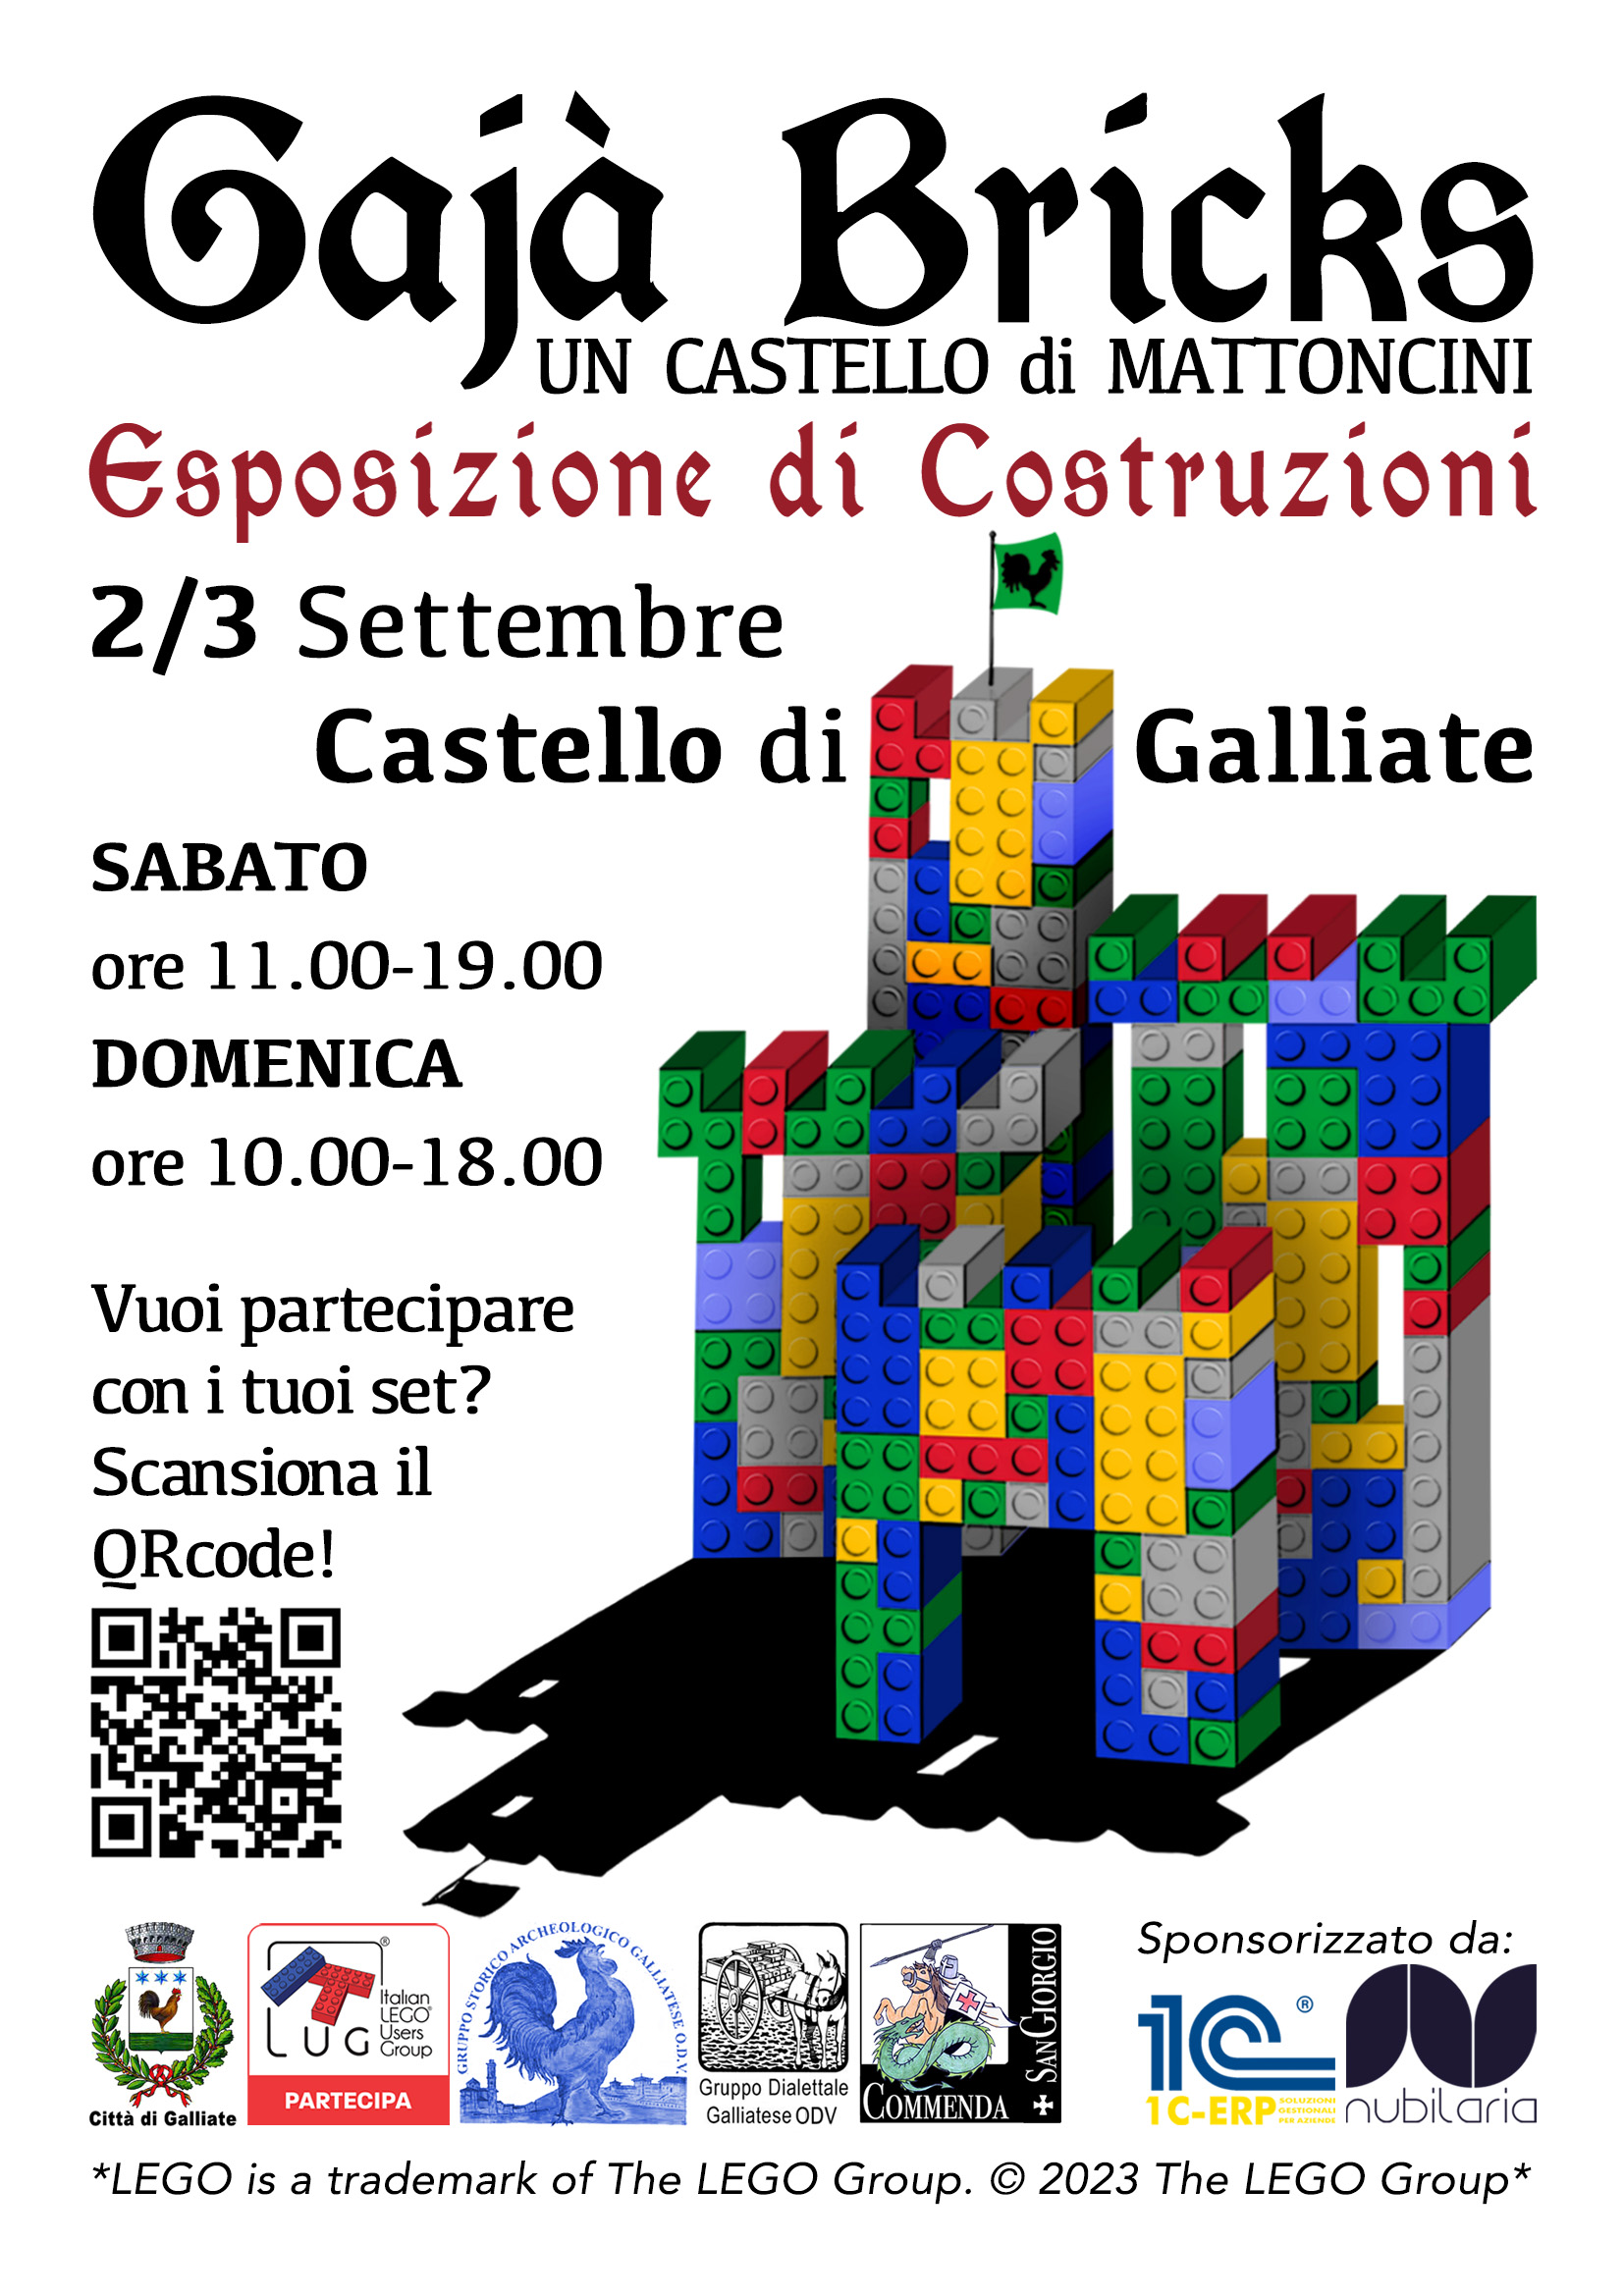 ItLUG partecipa a “Gajà Bricks - Un Castello di Mattoncini” 2023